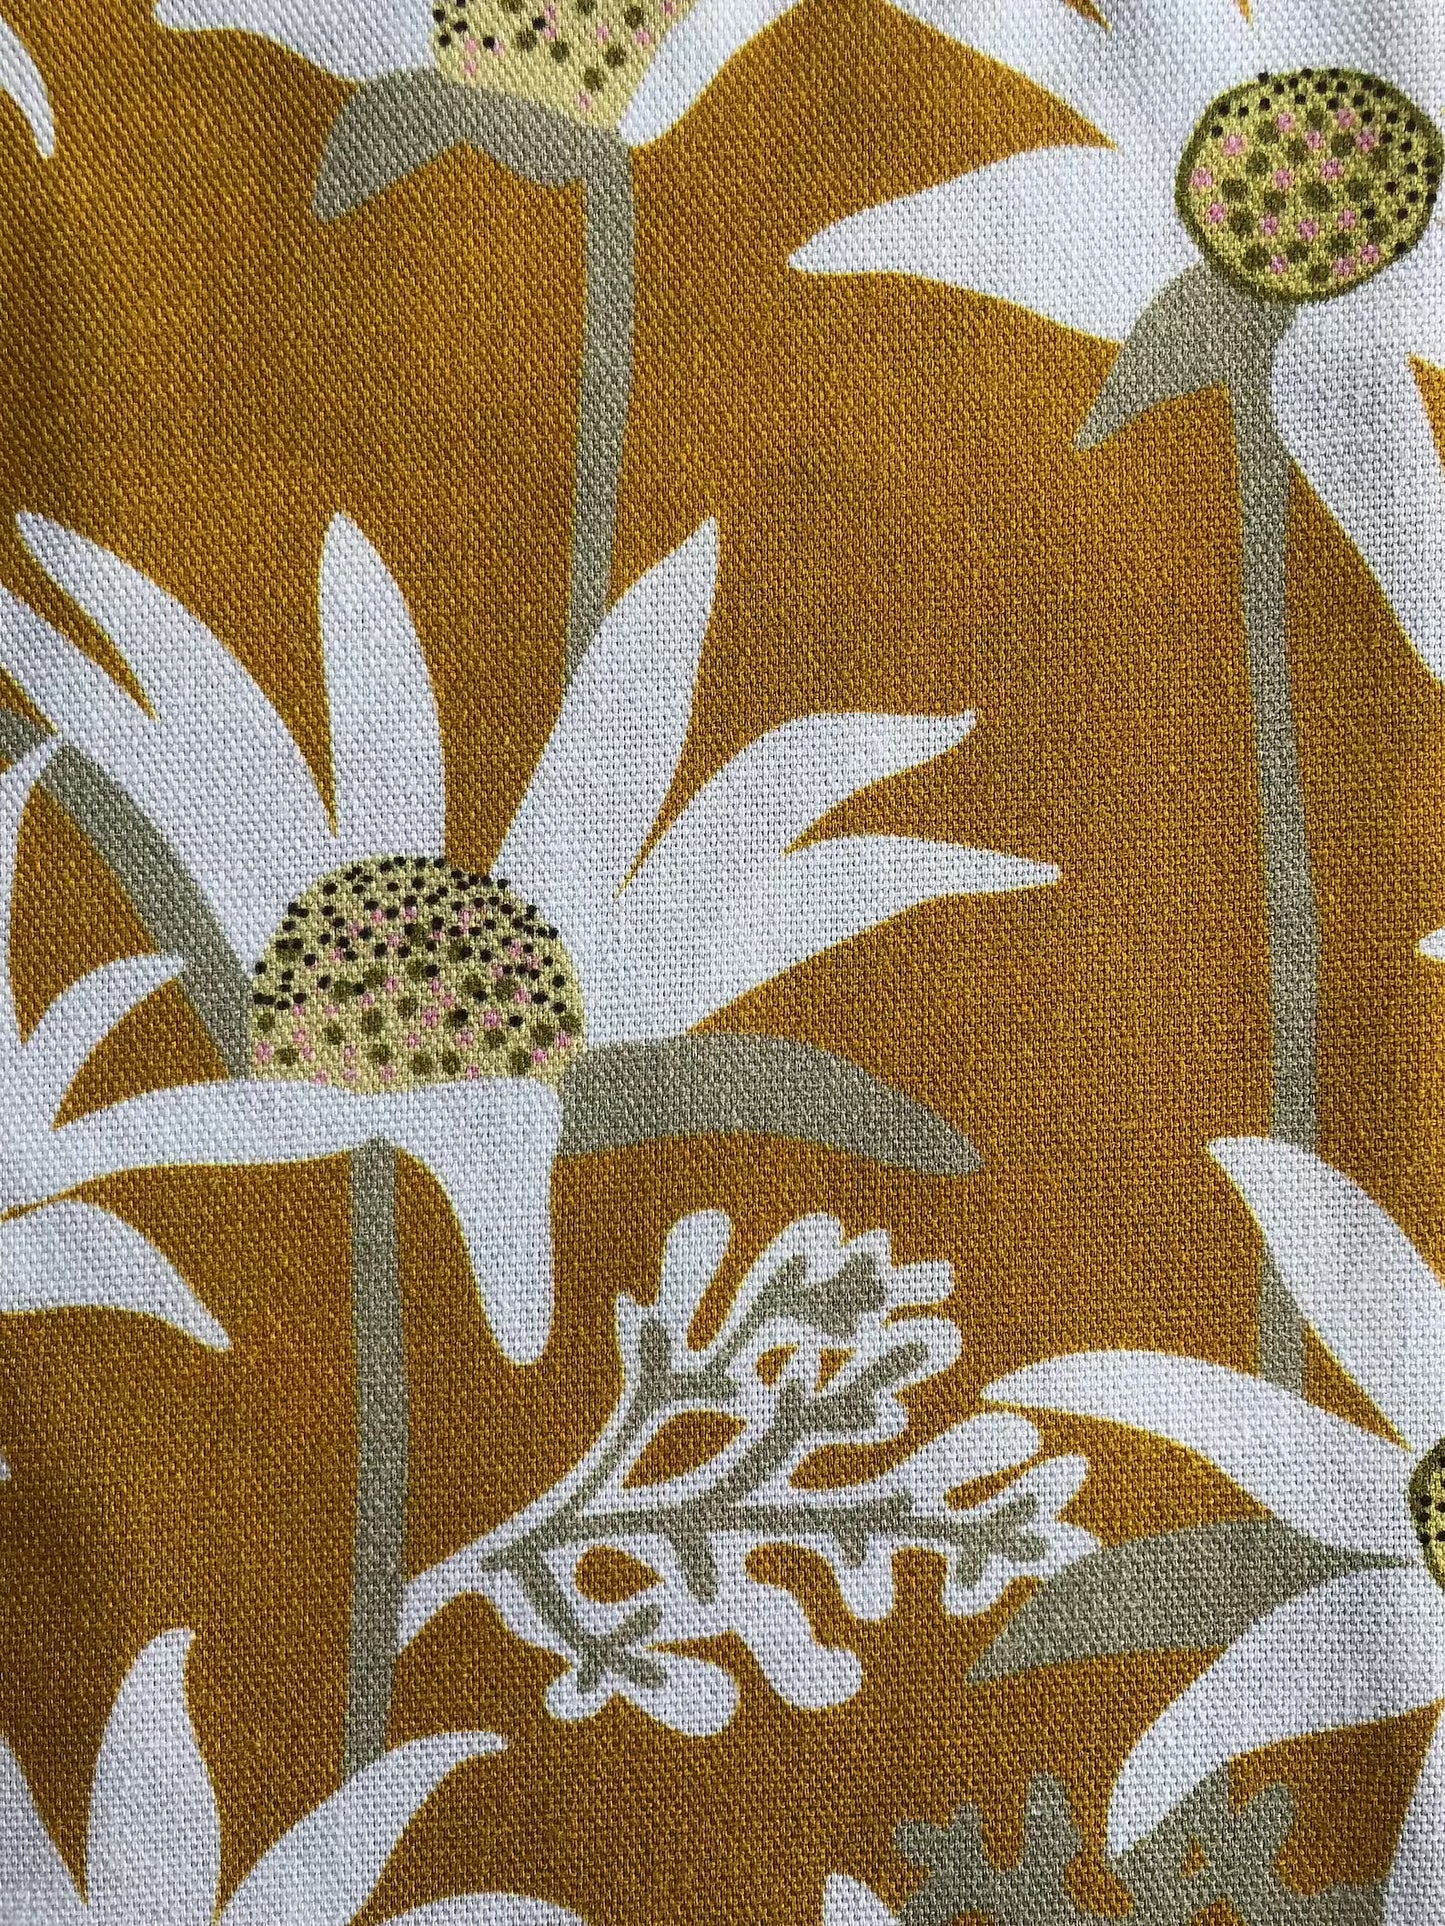 Jocelyn Proust Designs Tea Towel Australian Native Flannel Flower